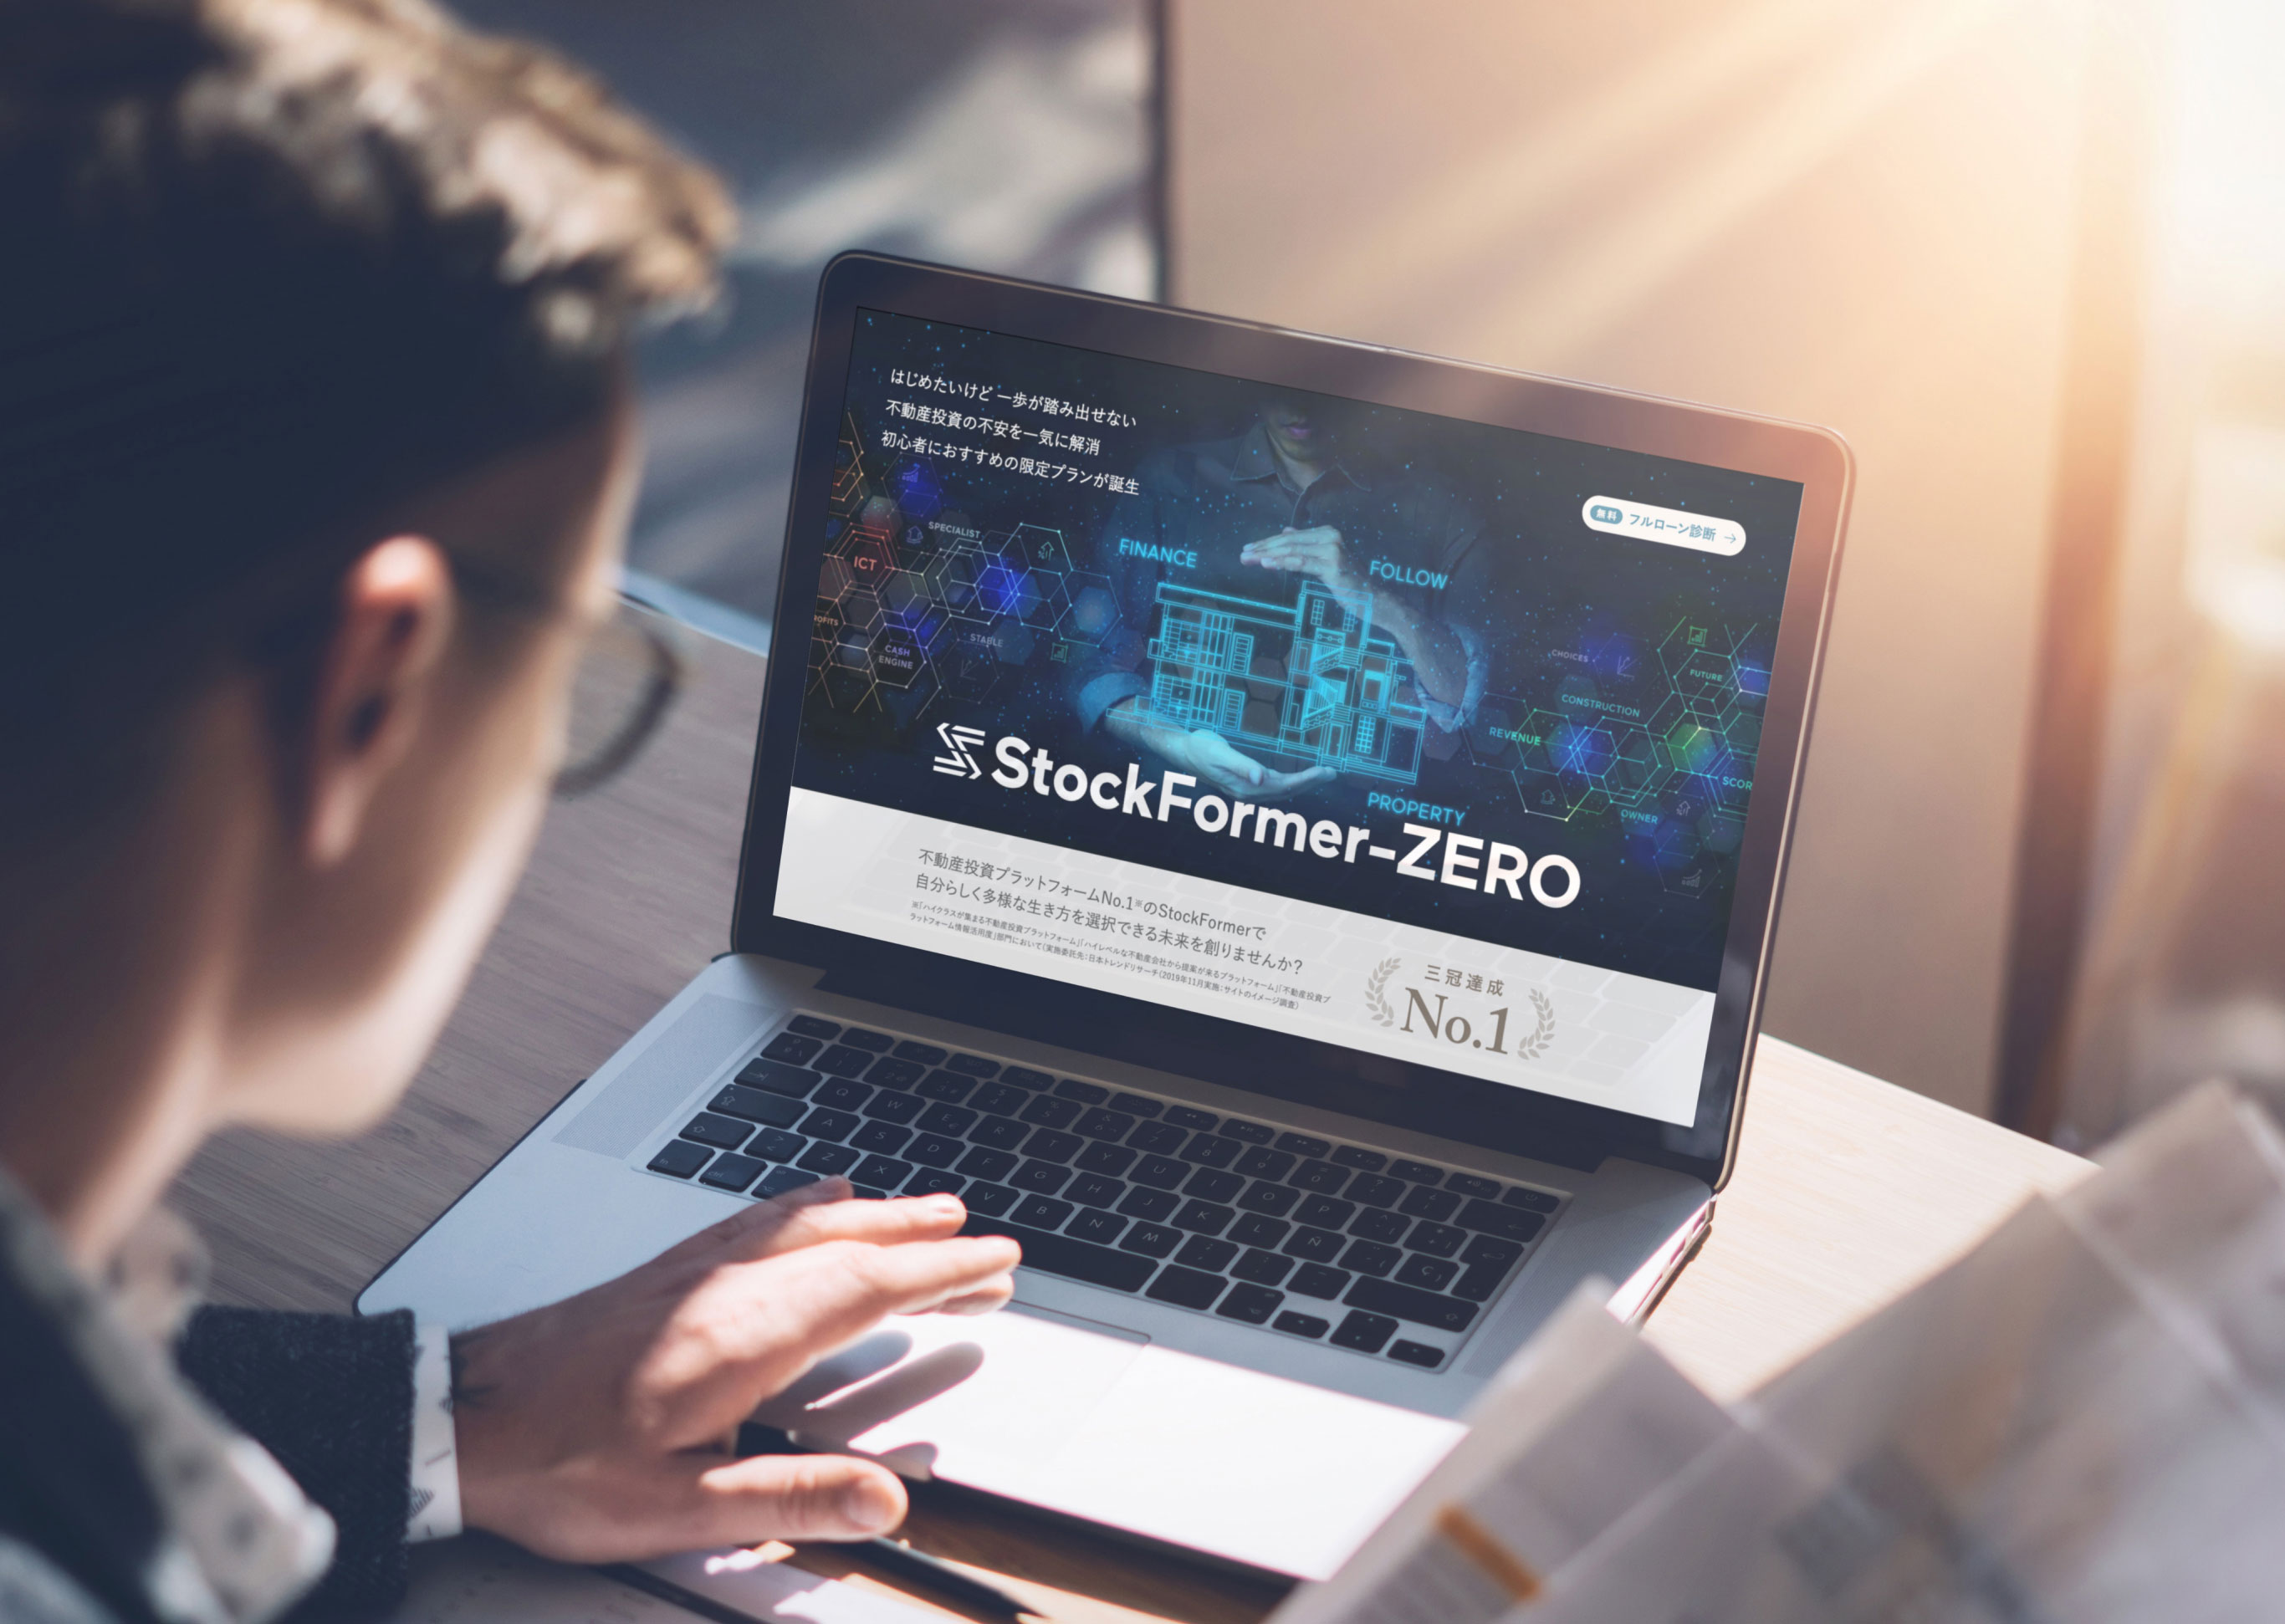 stock-former-zero